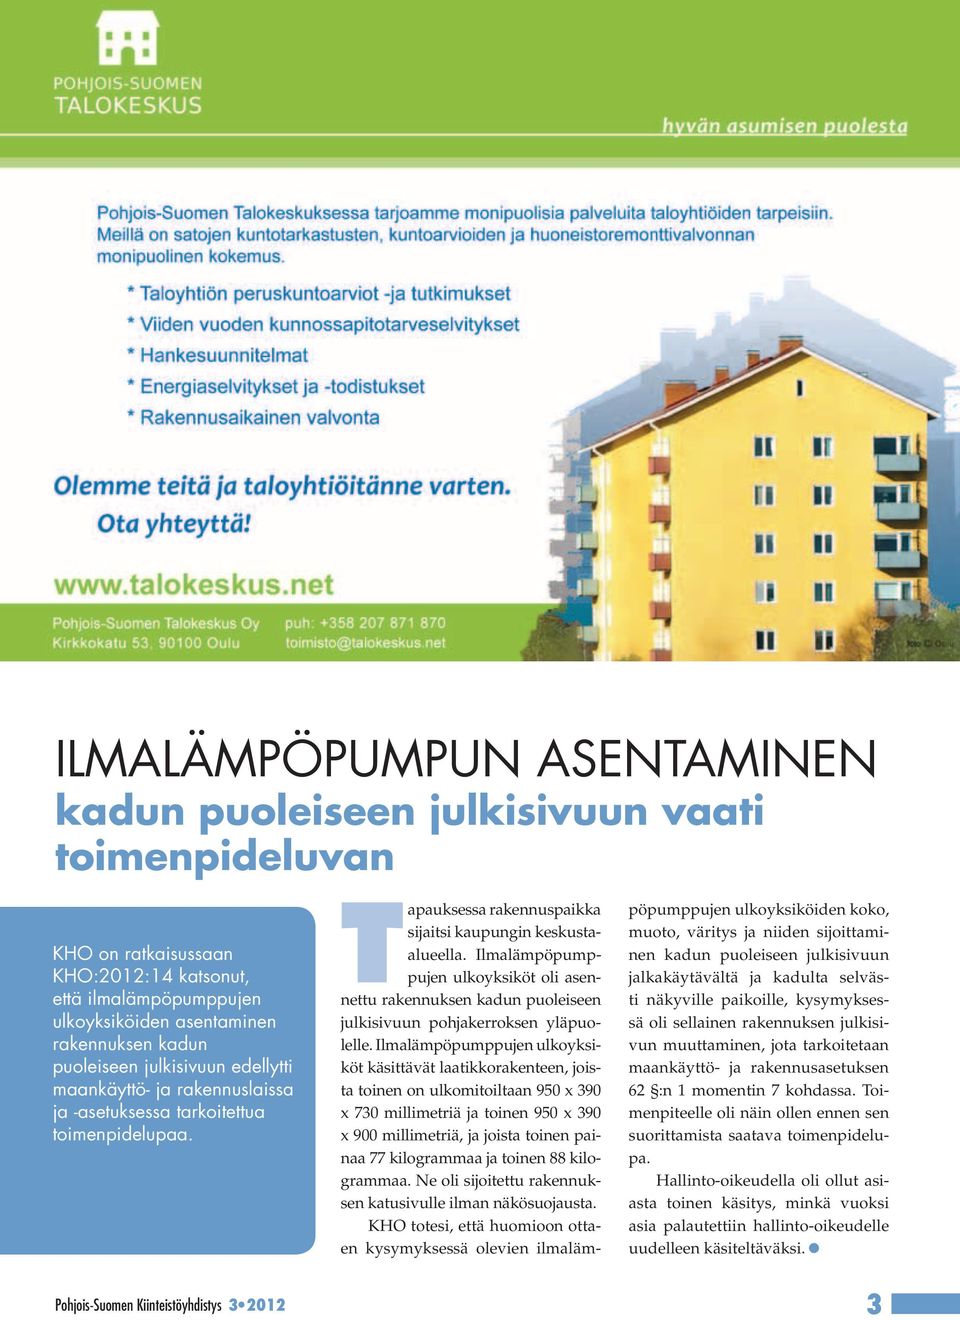 Pohjois-Suomen Kiinteistöyhdistys 3 2012 Tapauksessa rakennuspaikka sijaitsi kaupungin keskustaalueella.